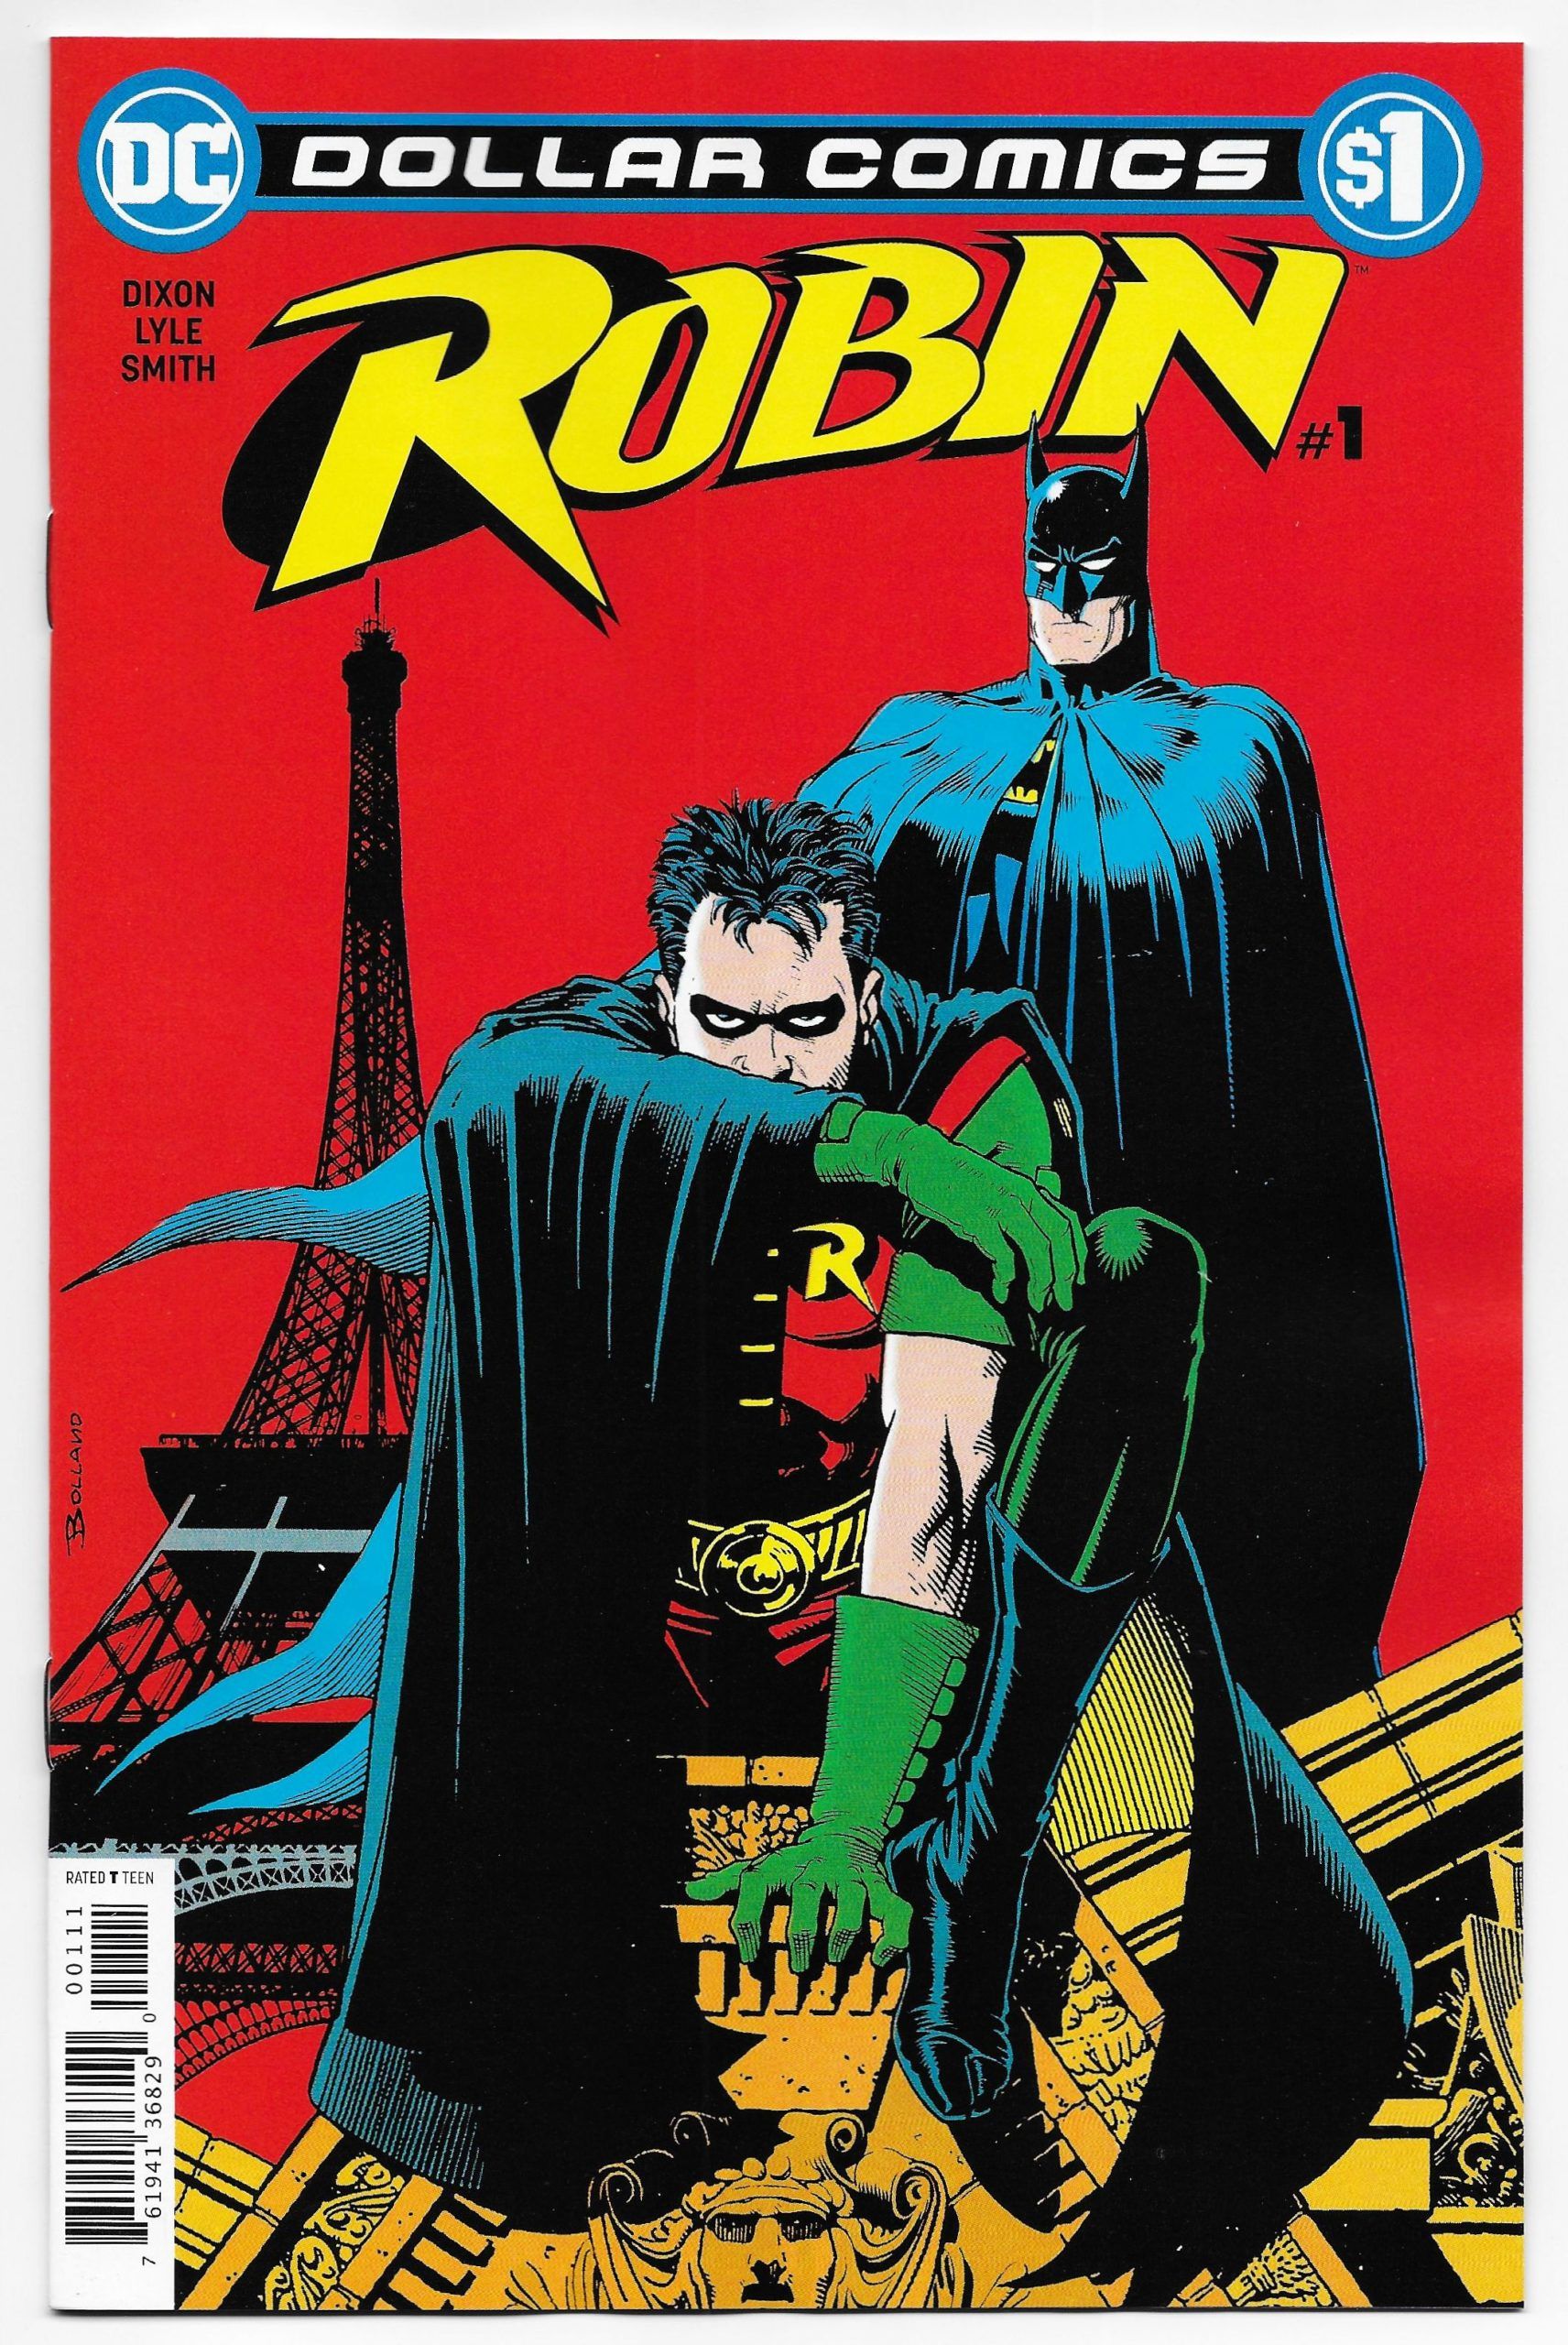 Dollar Comics: Robin Comic